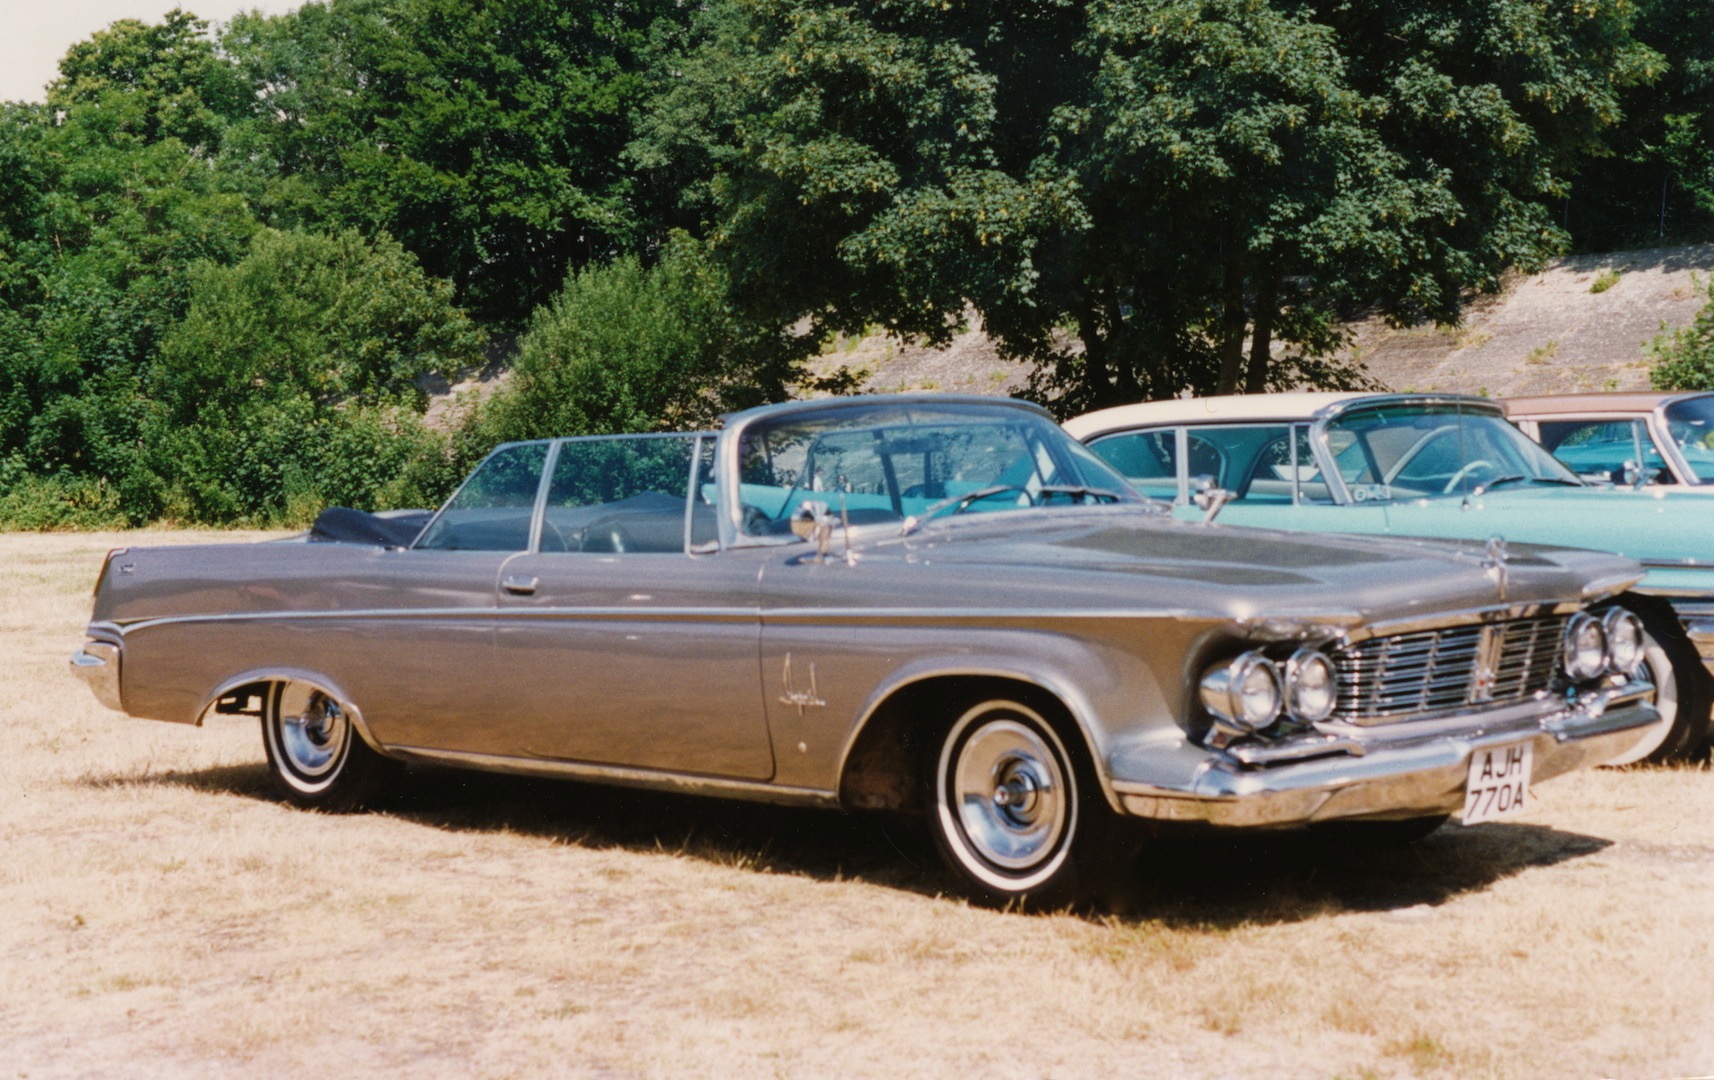 1963 Imperial Crown Convertible / Flickr - Partage de photos!